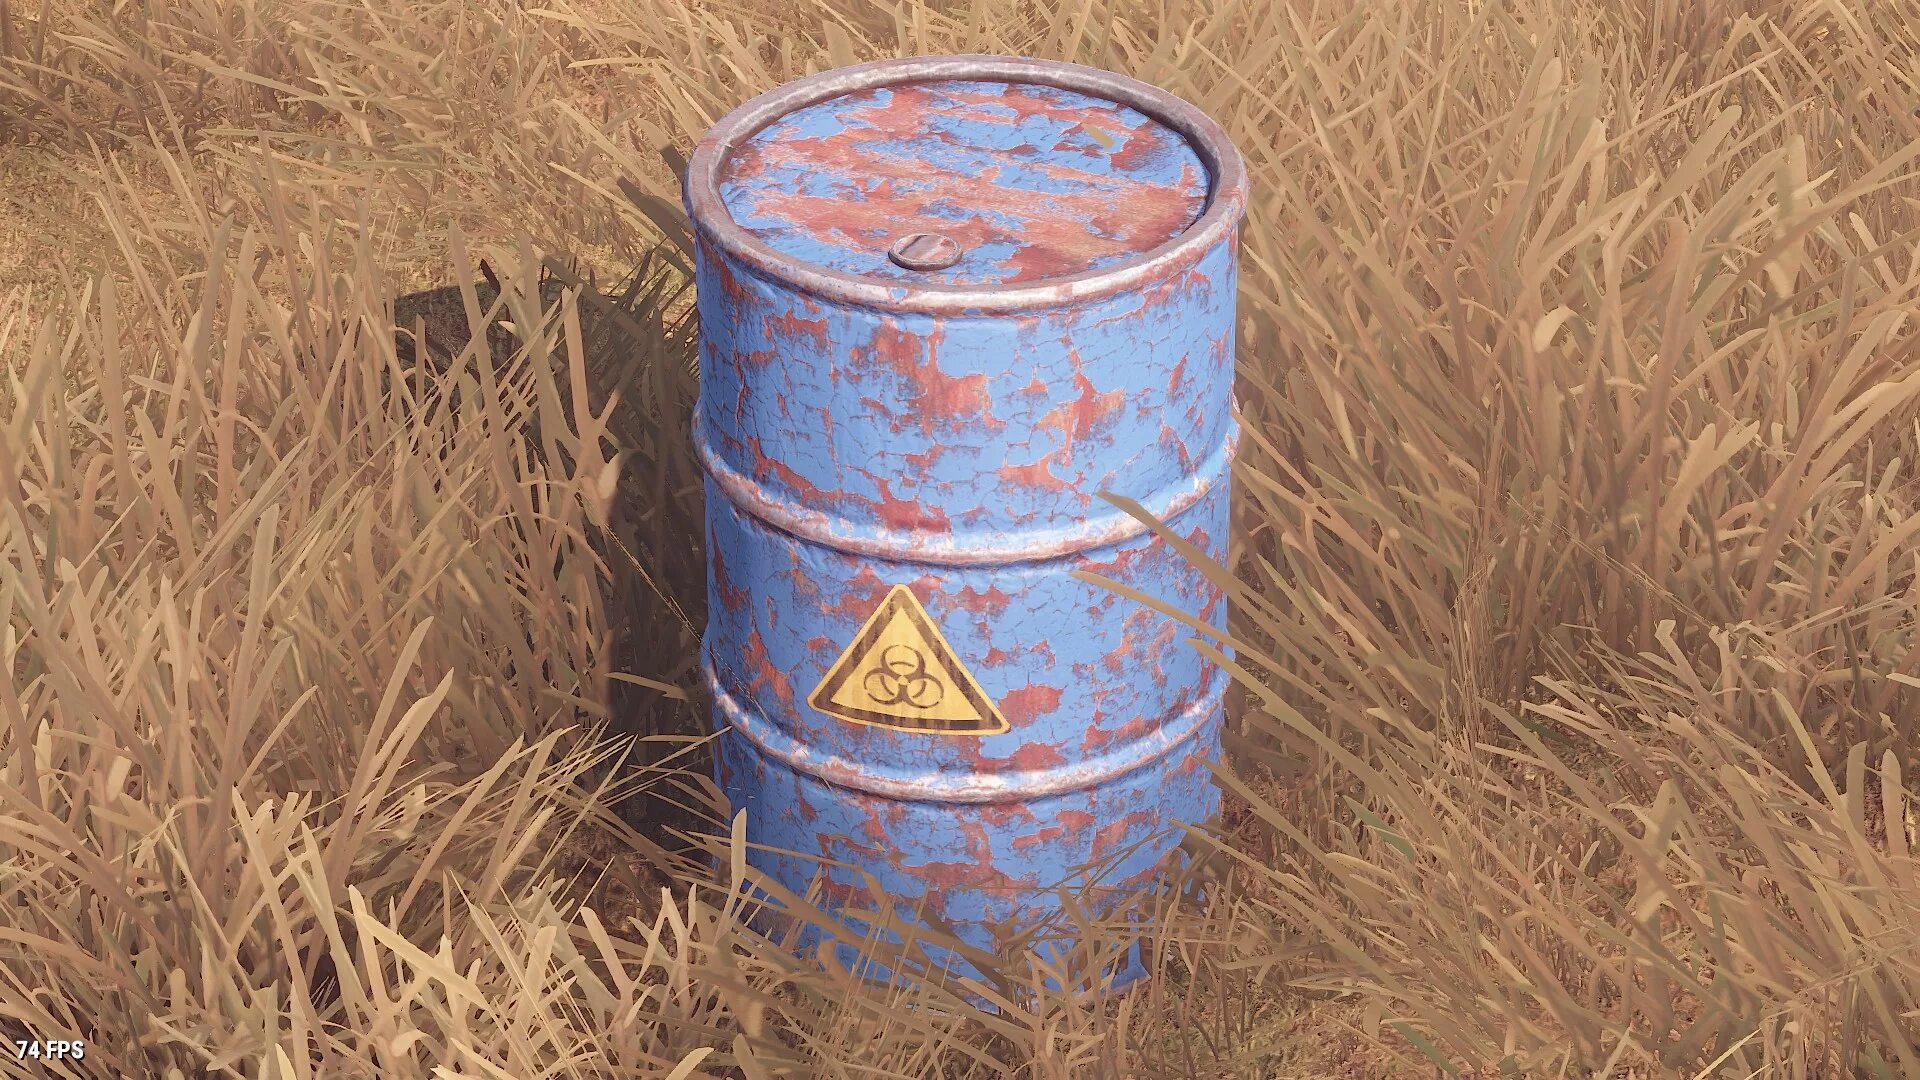 Barrel rust